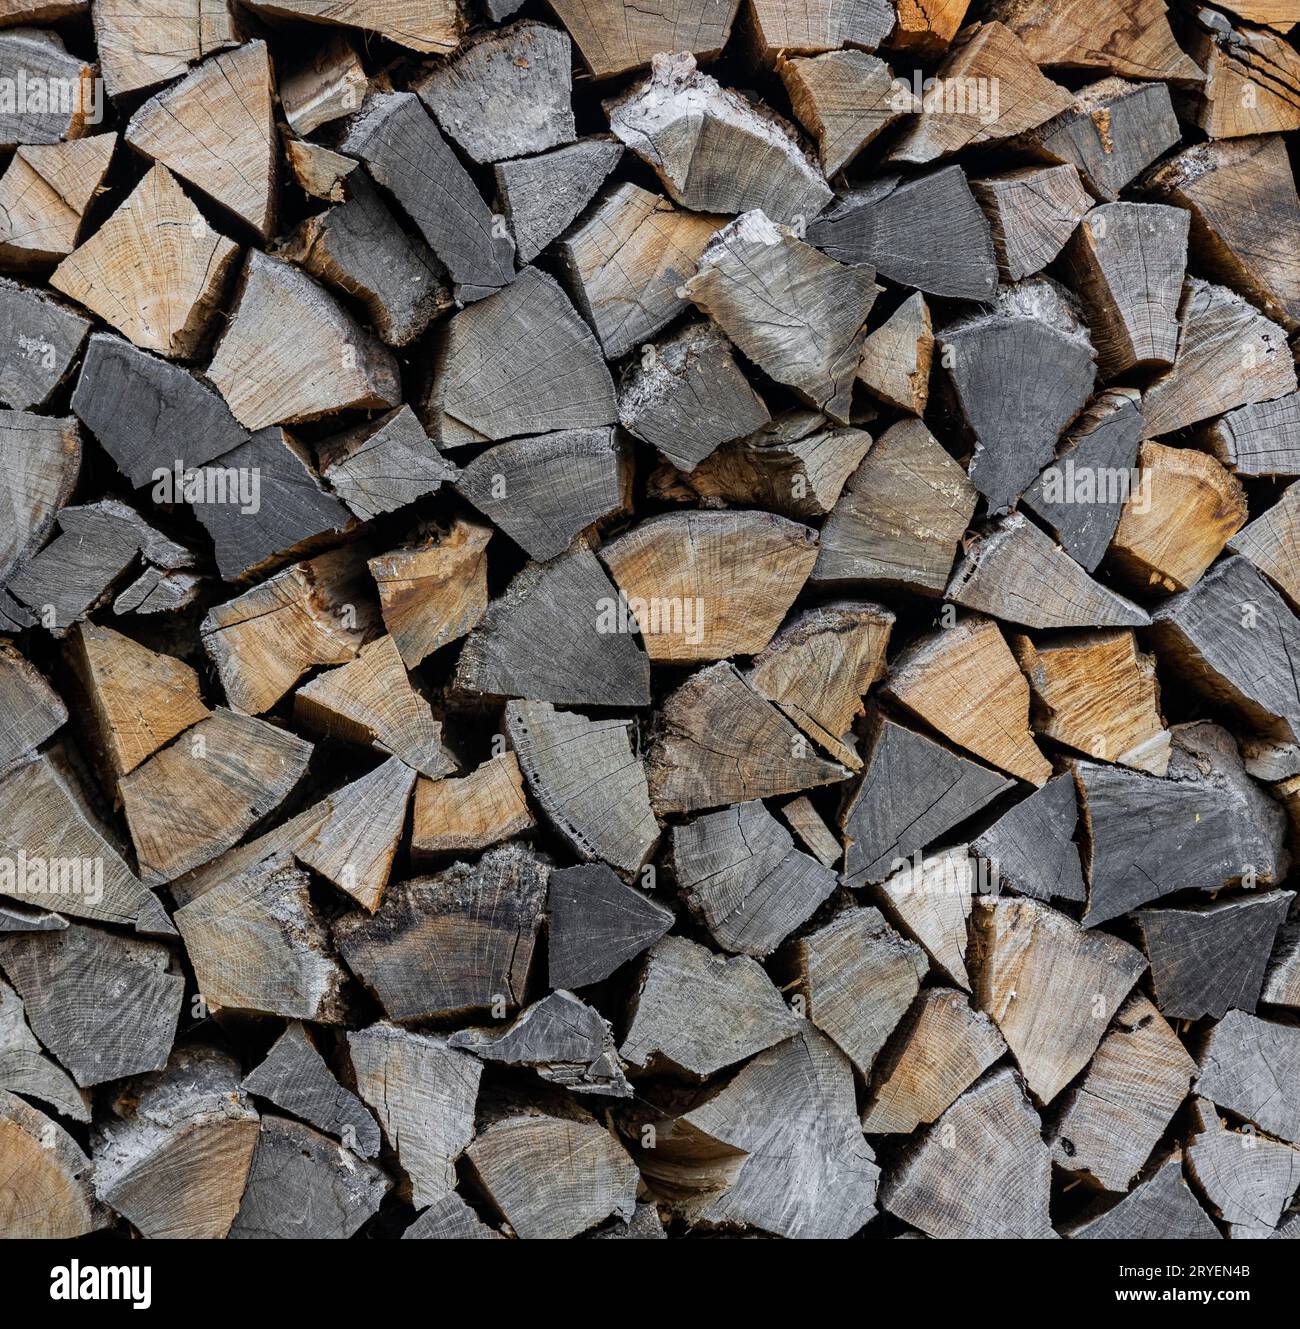 Pila di legna da ardere di quercia tronchi di legno Foto Stock